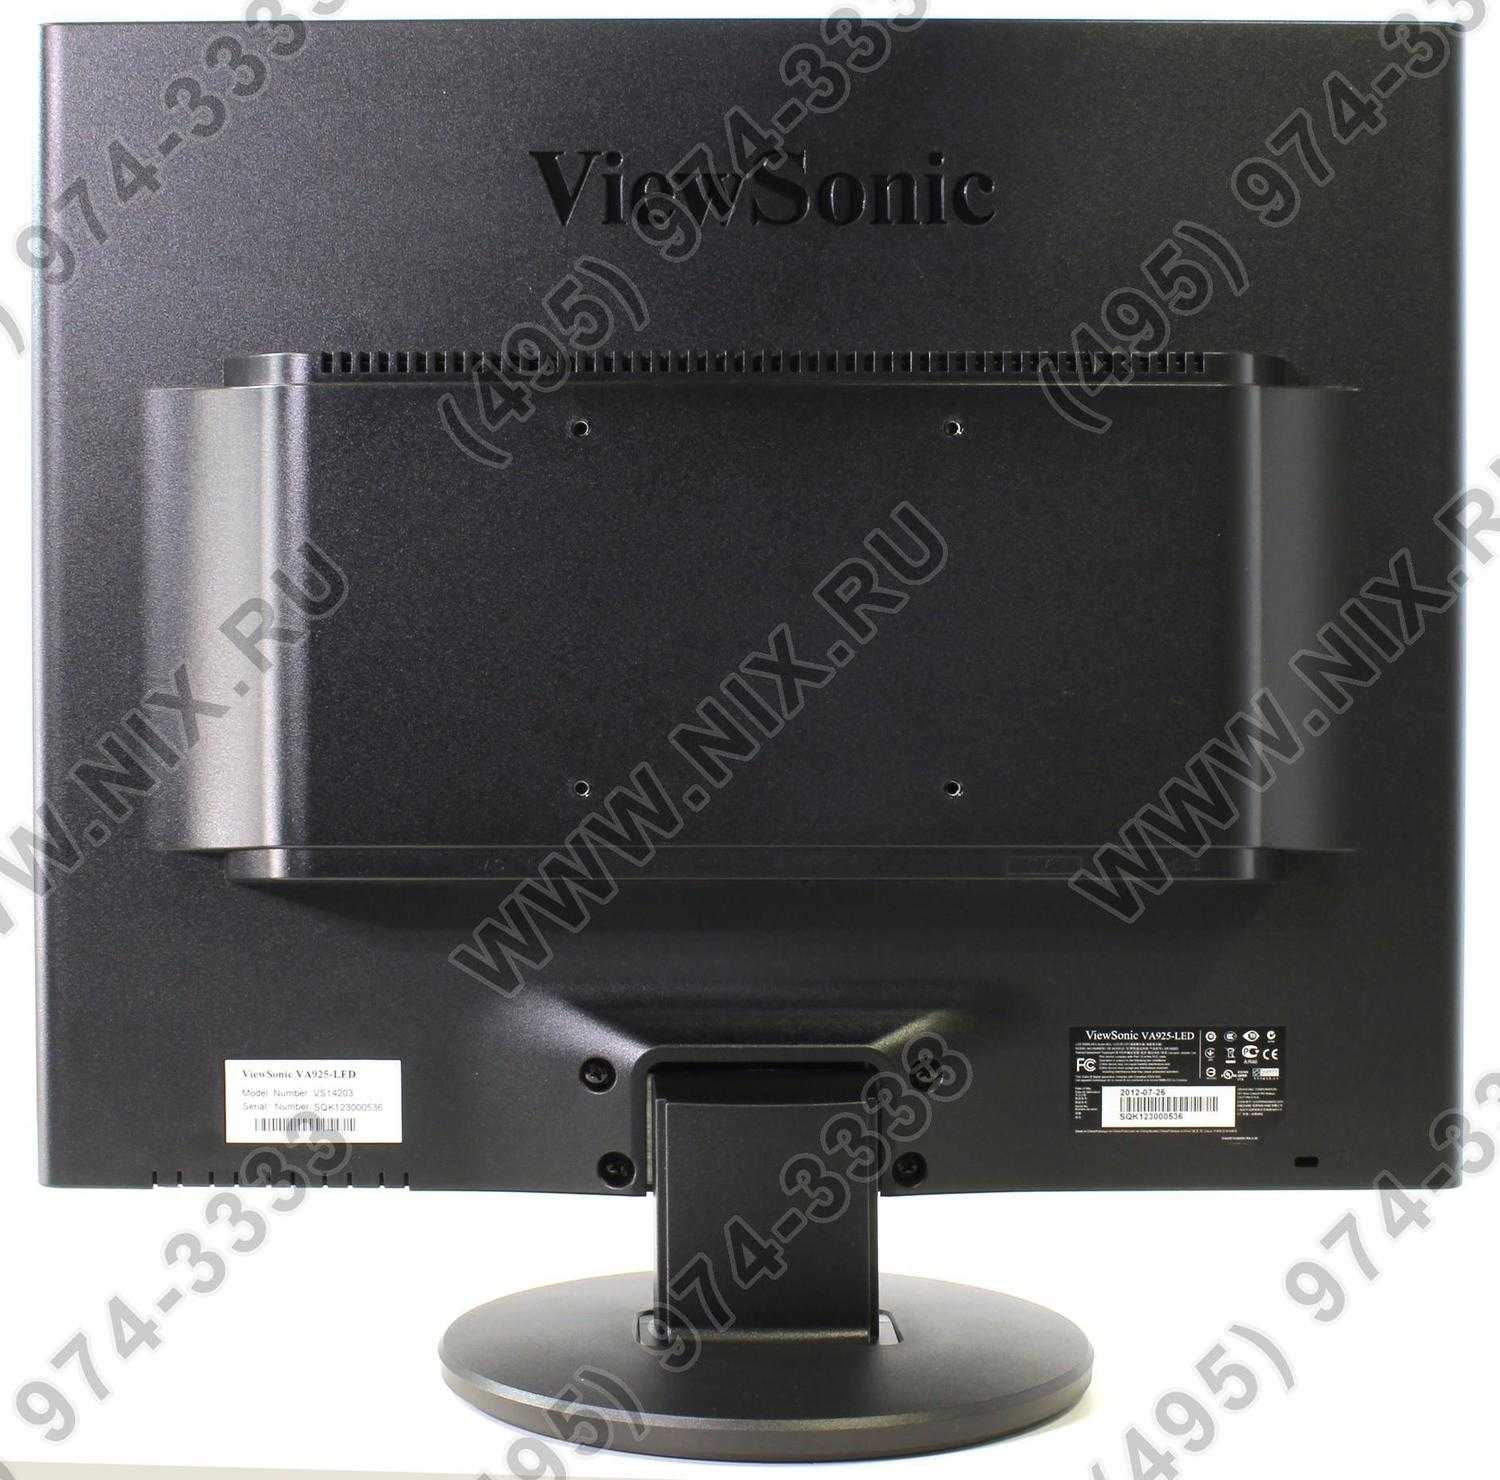 Viewsonic va925-led купить по акционной цене , отзывы и обзоры.